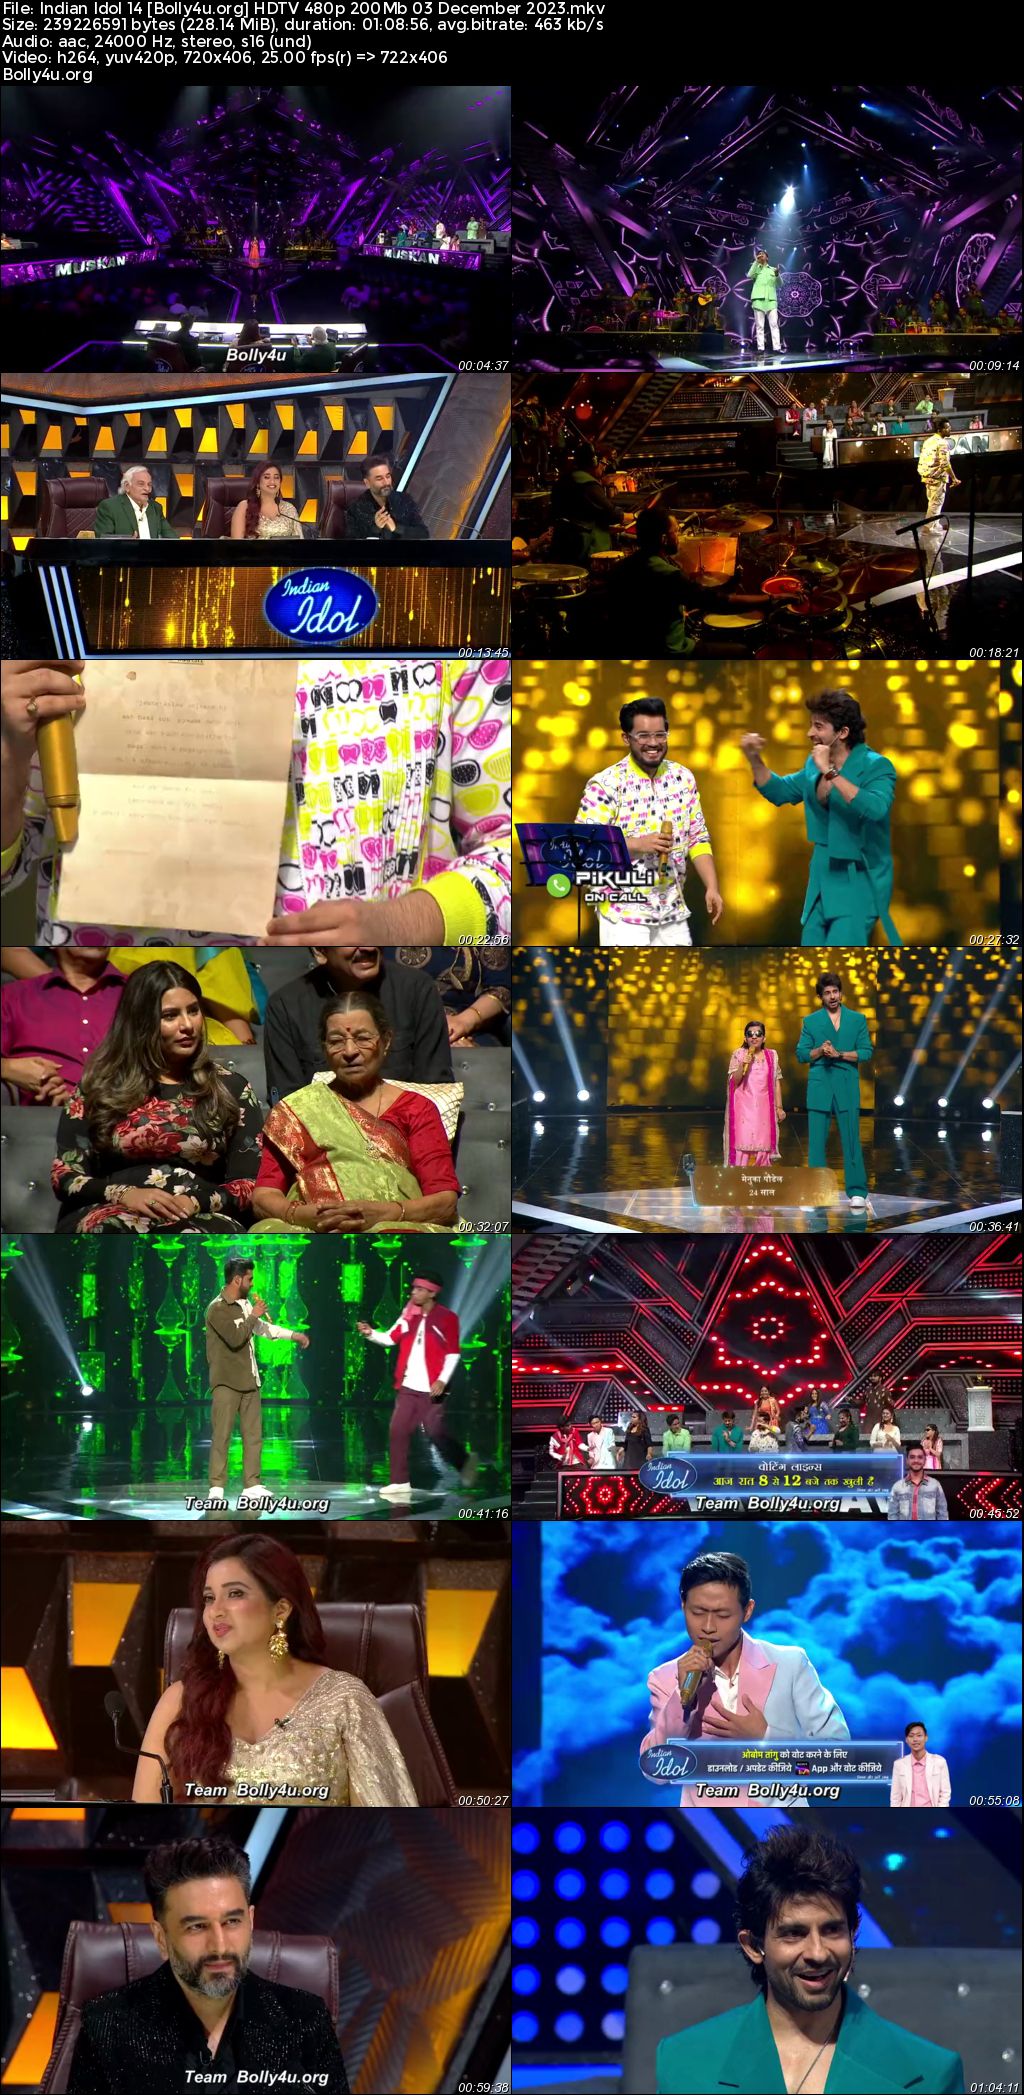 Indian Idol 14 HDTV 480p 200MB 03 December 2023 Download